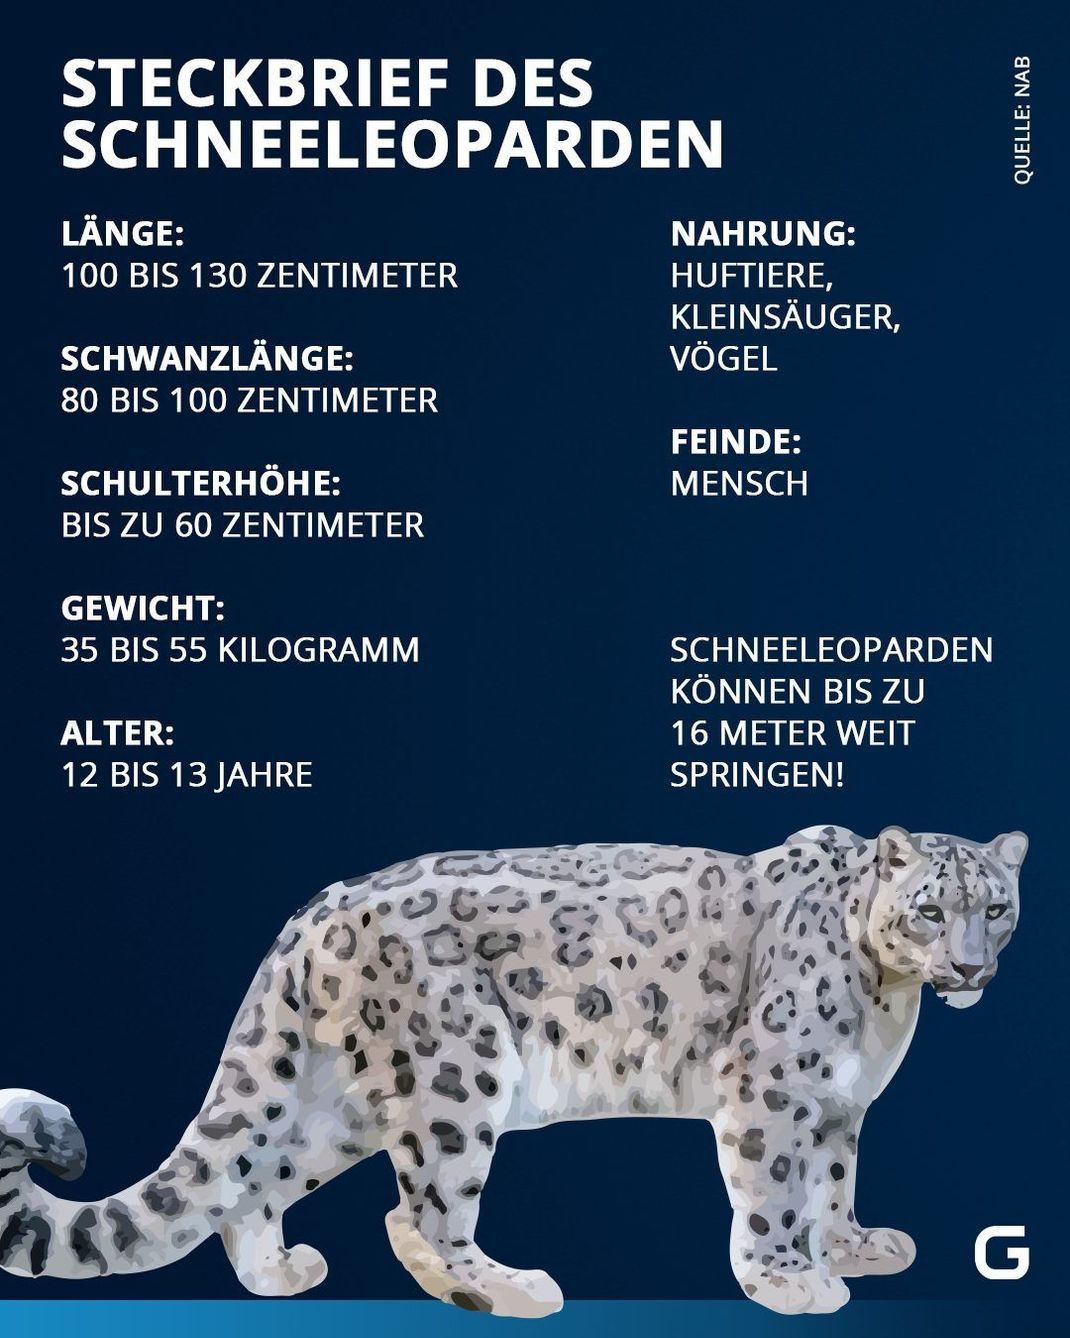 Schneeleopard Steckbrief: Länge, Gewicht, Alter, Nahrung und Feinde der Wildkatze